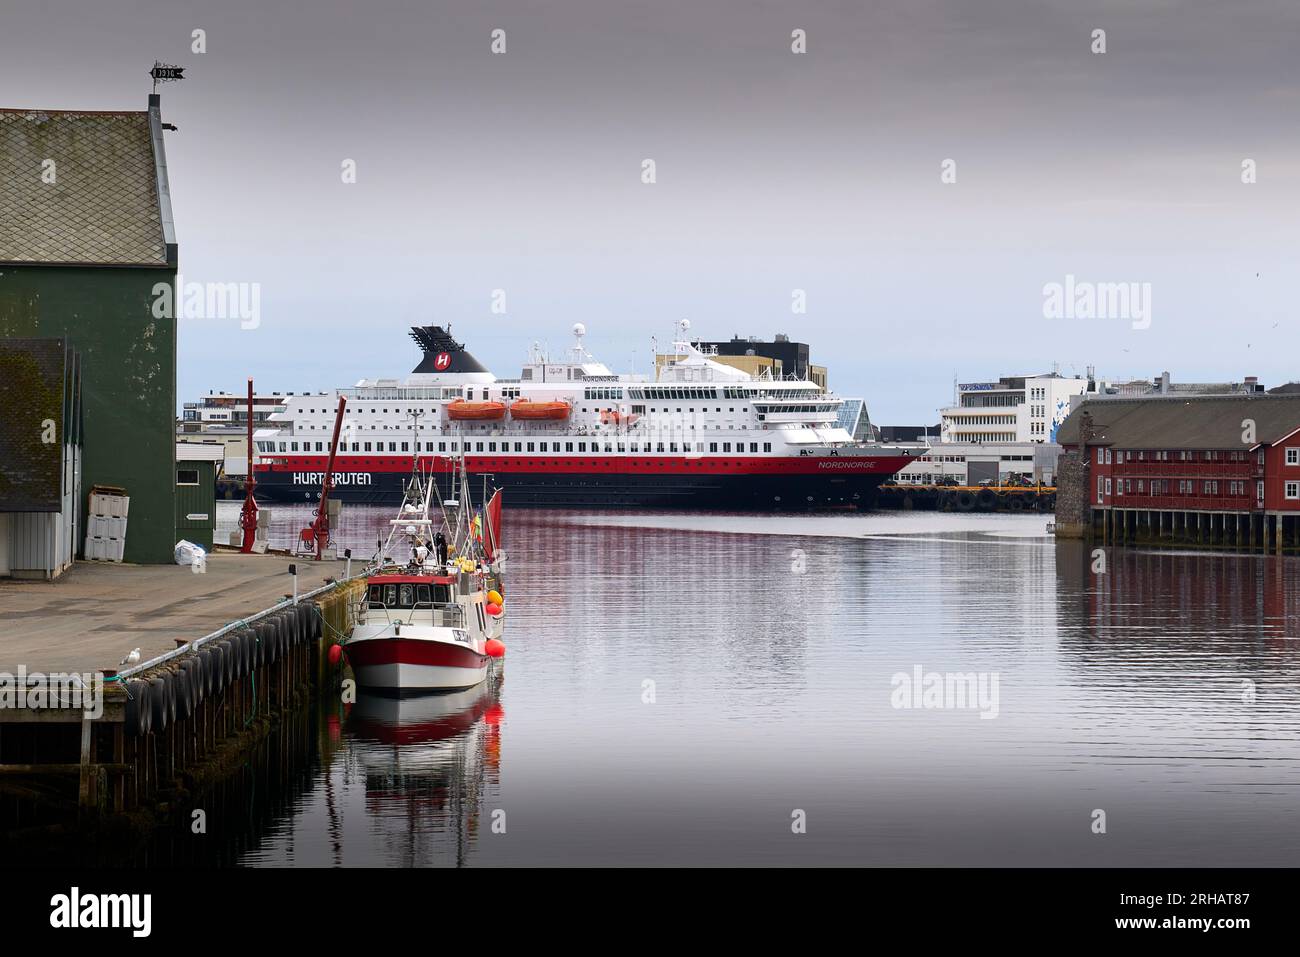 Storici magazzini norvegesi per il pesce in Foreground e il traghetto Hurtigruten, MS NORDNORGE, ormeggiati nella città di Svolvær, nelle isole Lofoten. Foto Stock